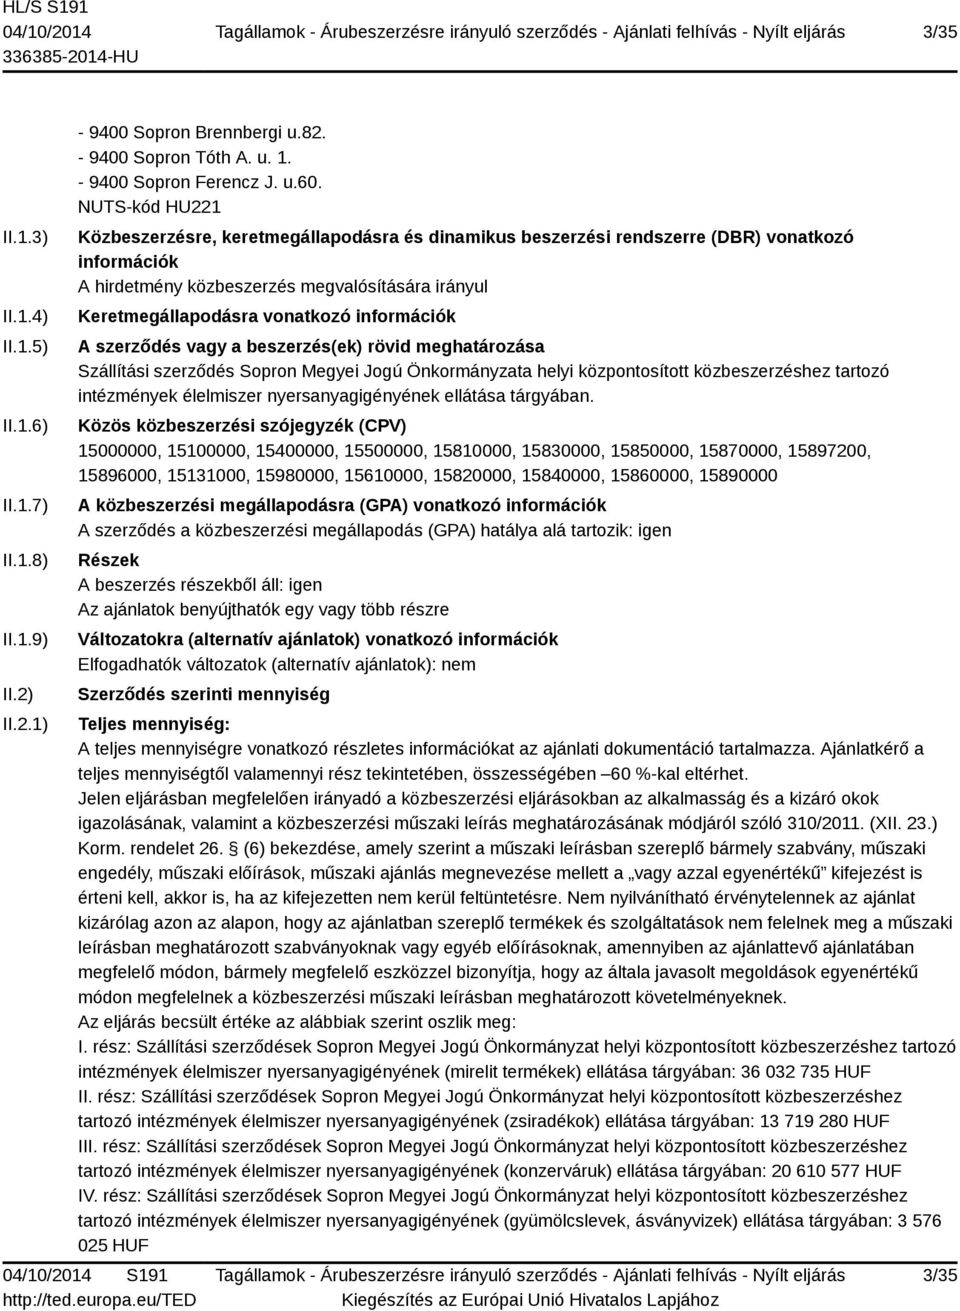 információk A szerződés vagy a beszerzés(ek) rövid meghatározása Szállítási szerződés Sopron Megyei Jogú Önkormányzata helyi központosított közbeszerzéshez tartozó intézmények élelmiszer